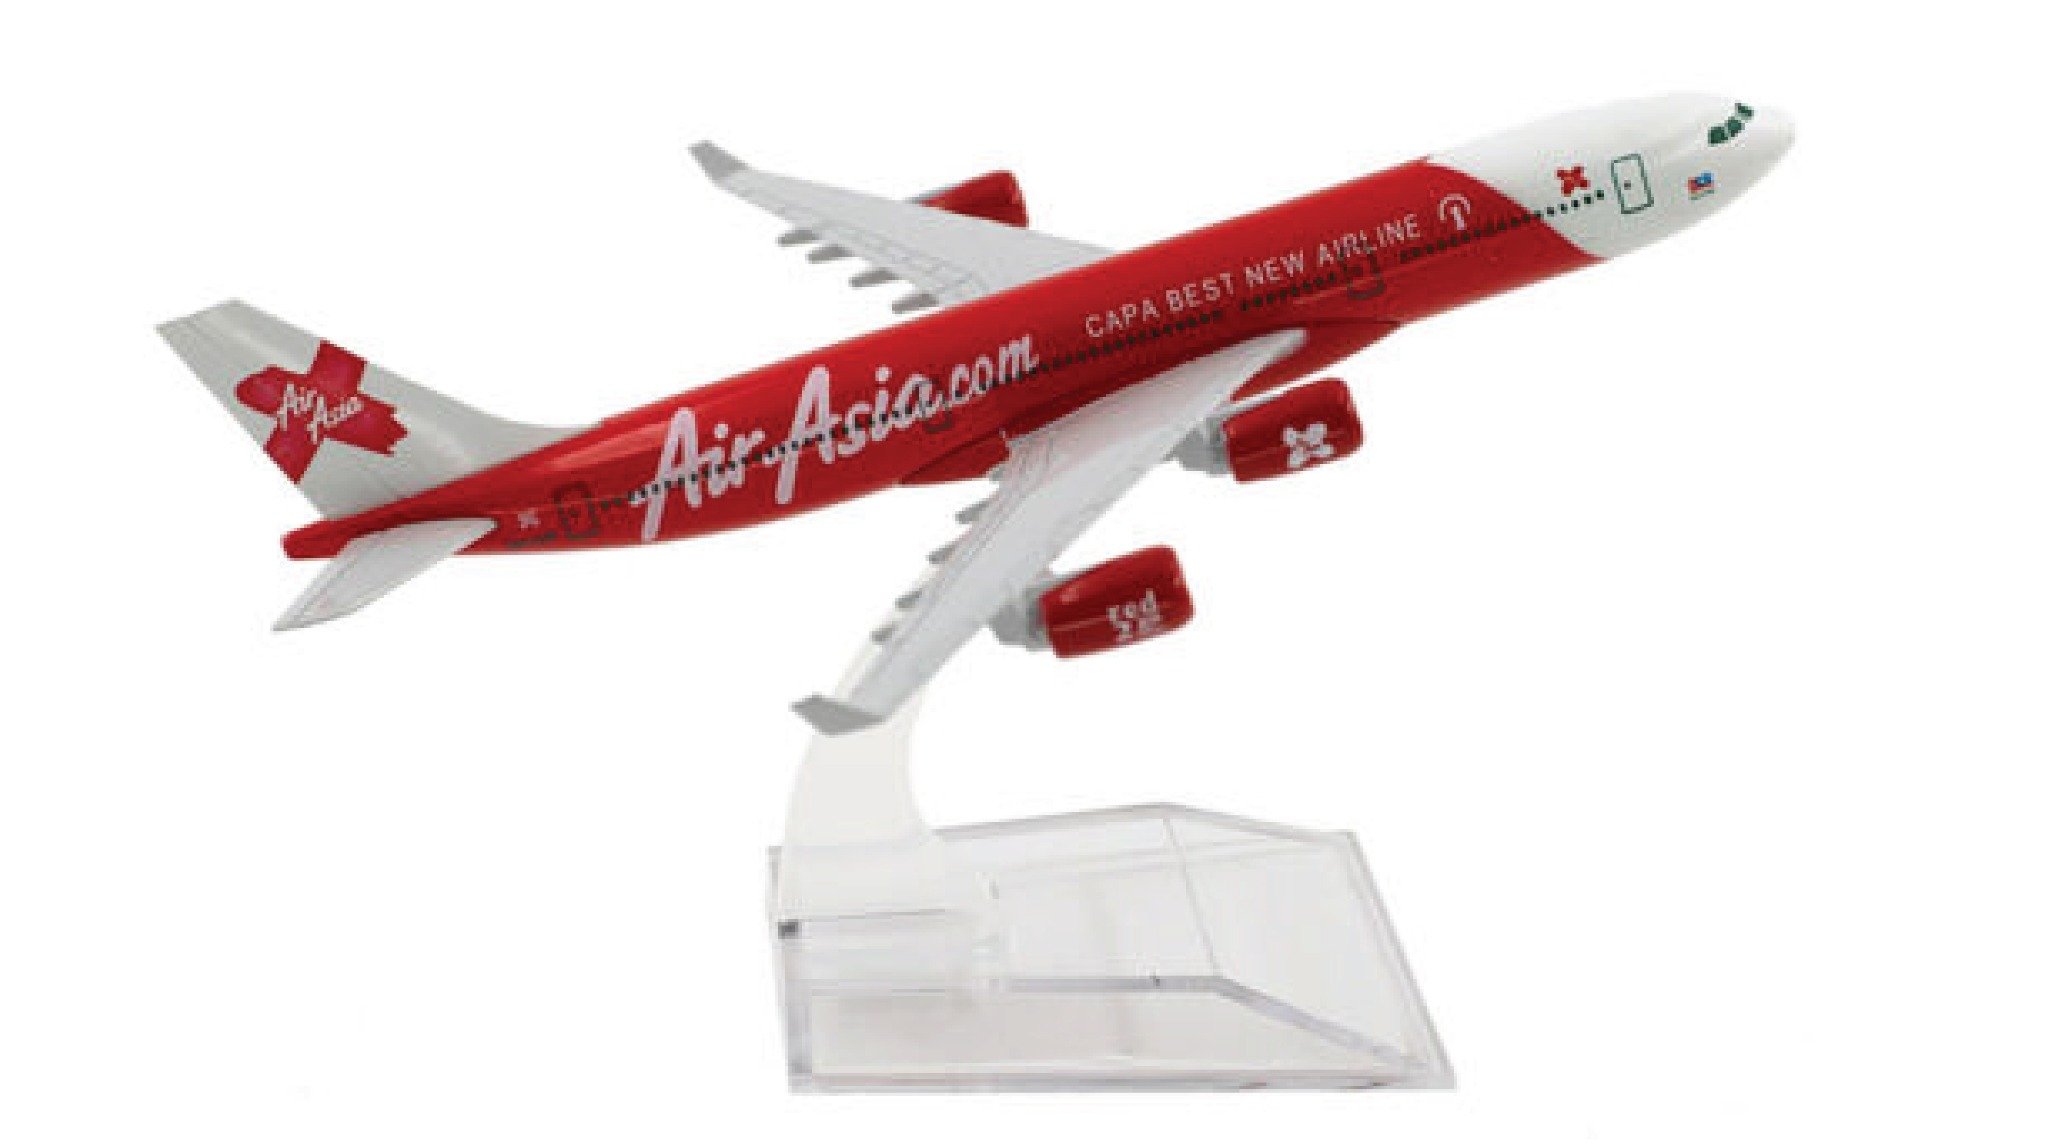  Mô hình máy bay Air Asia Capa best new airline Airbus A340-A330 16cm MB16144 